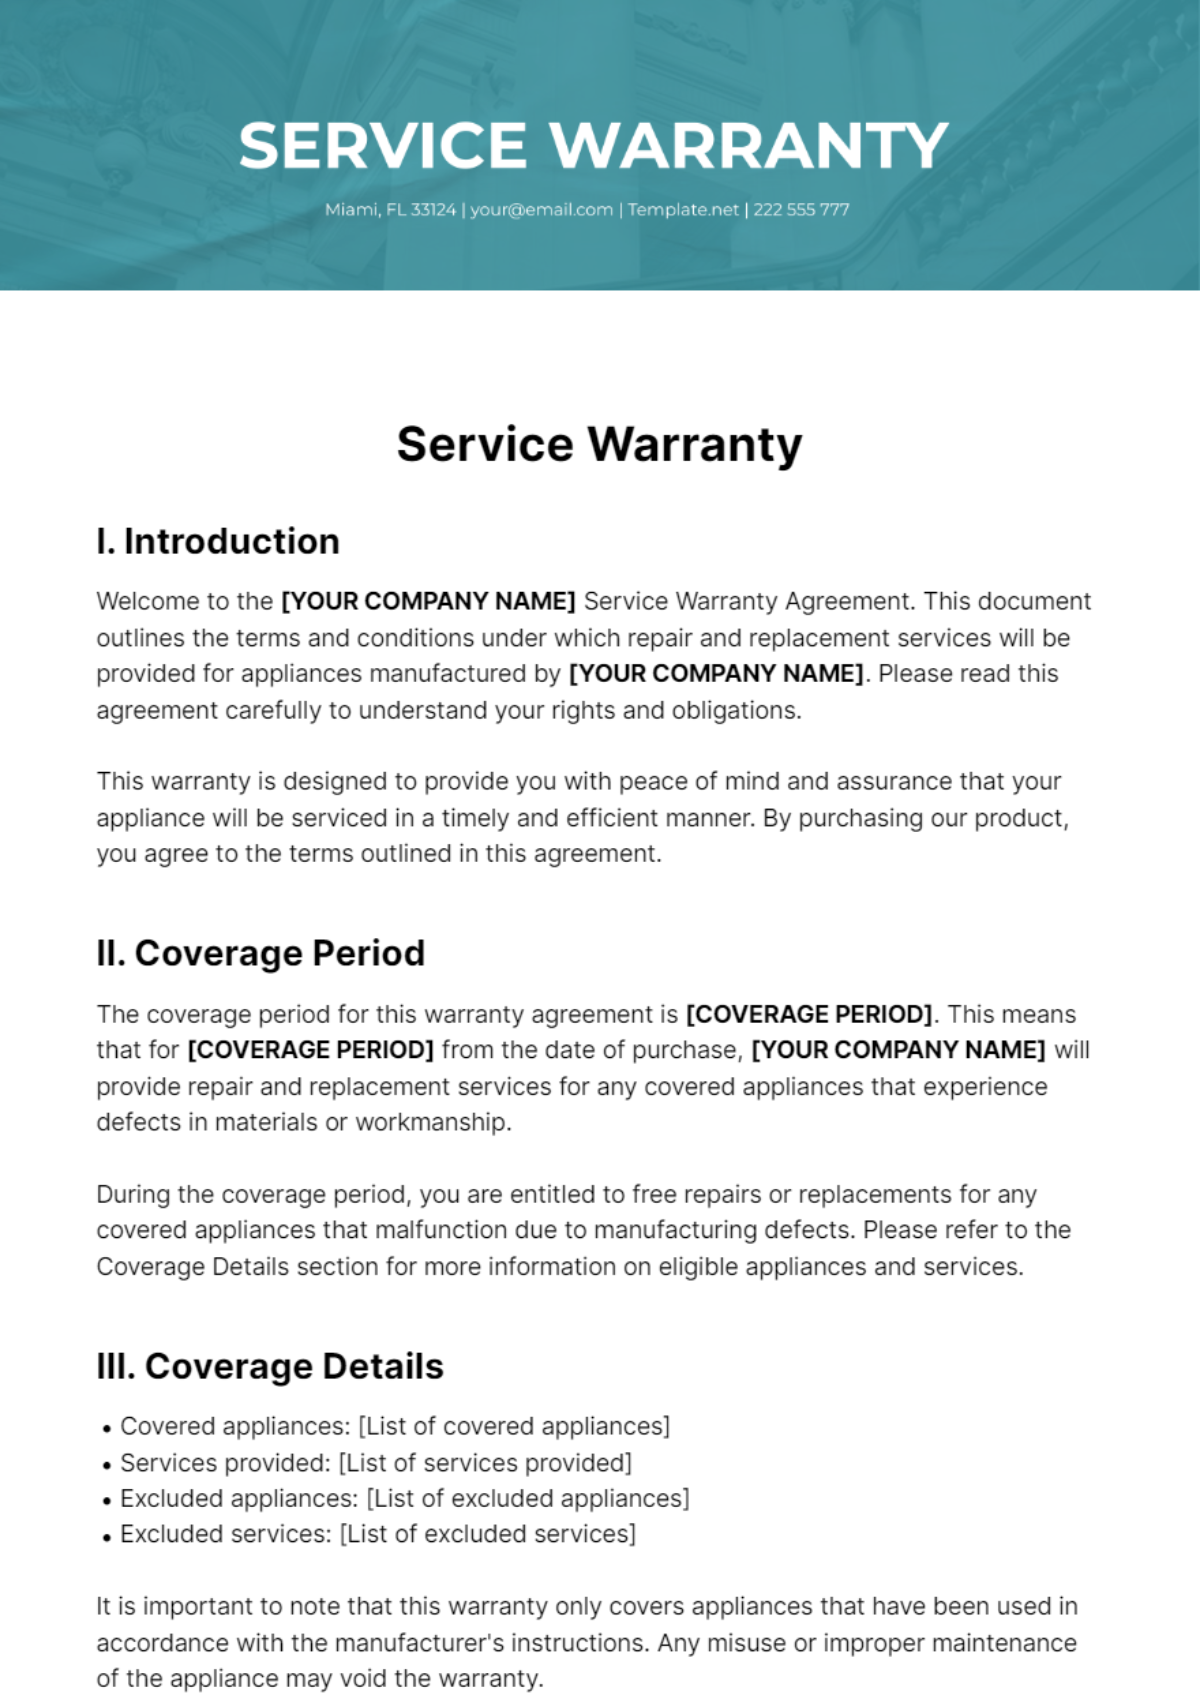 Service Warranty Template